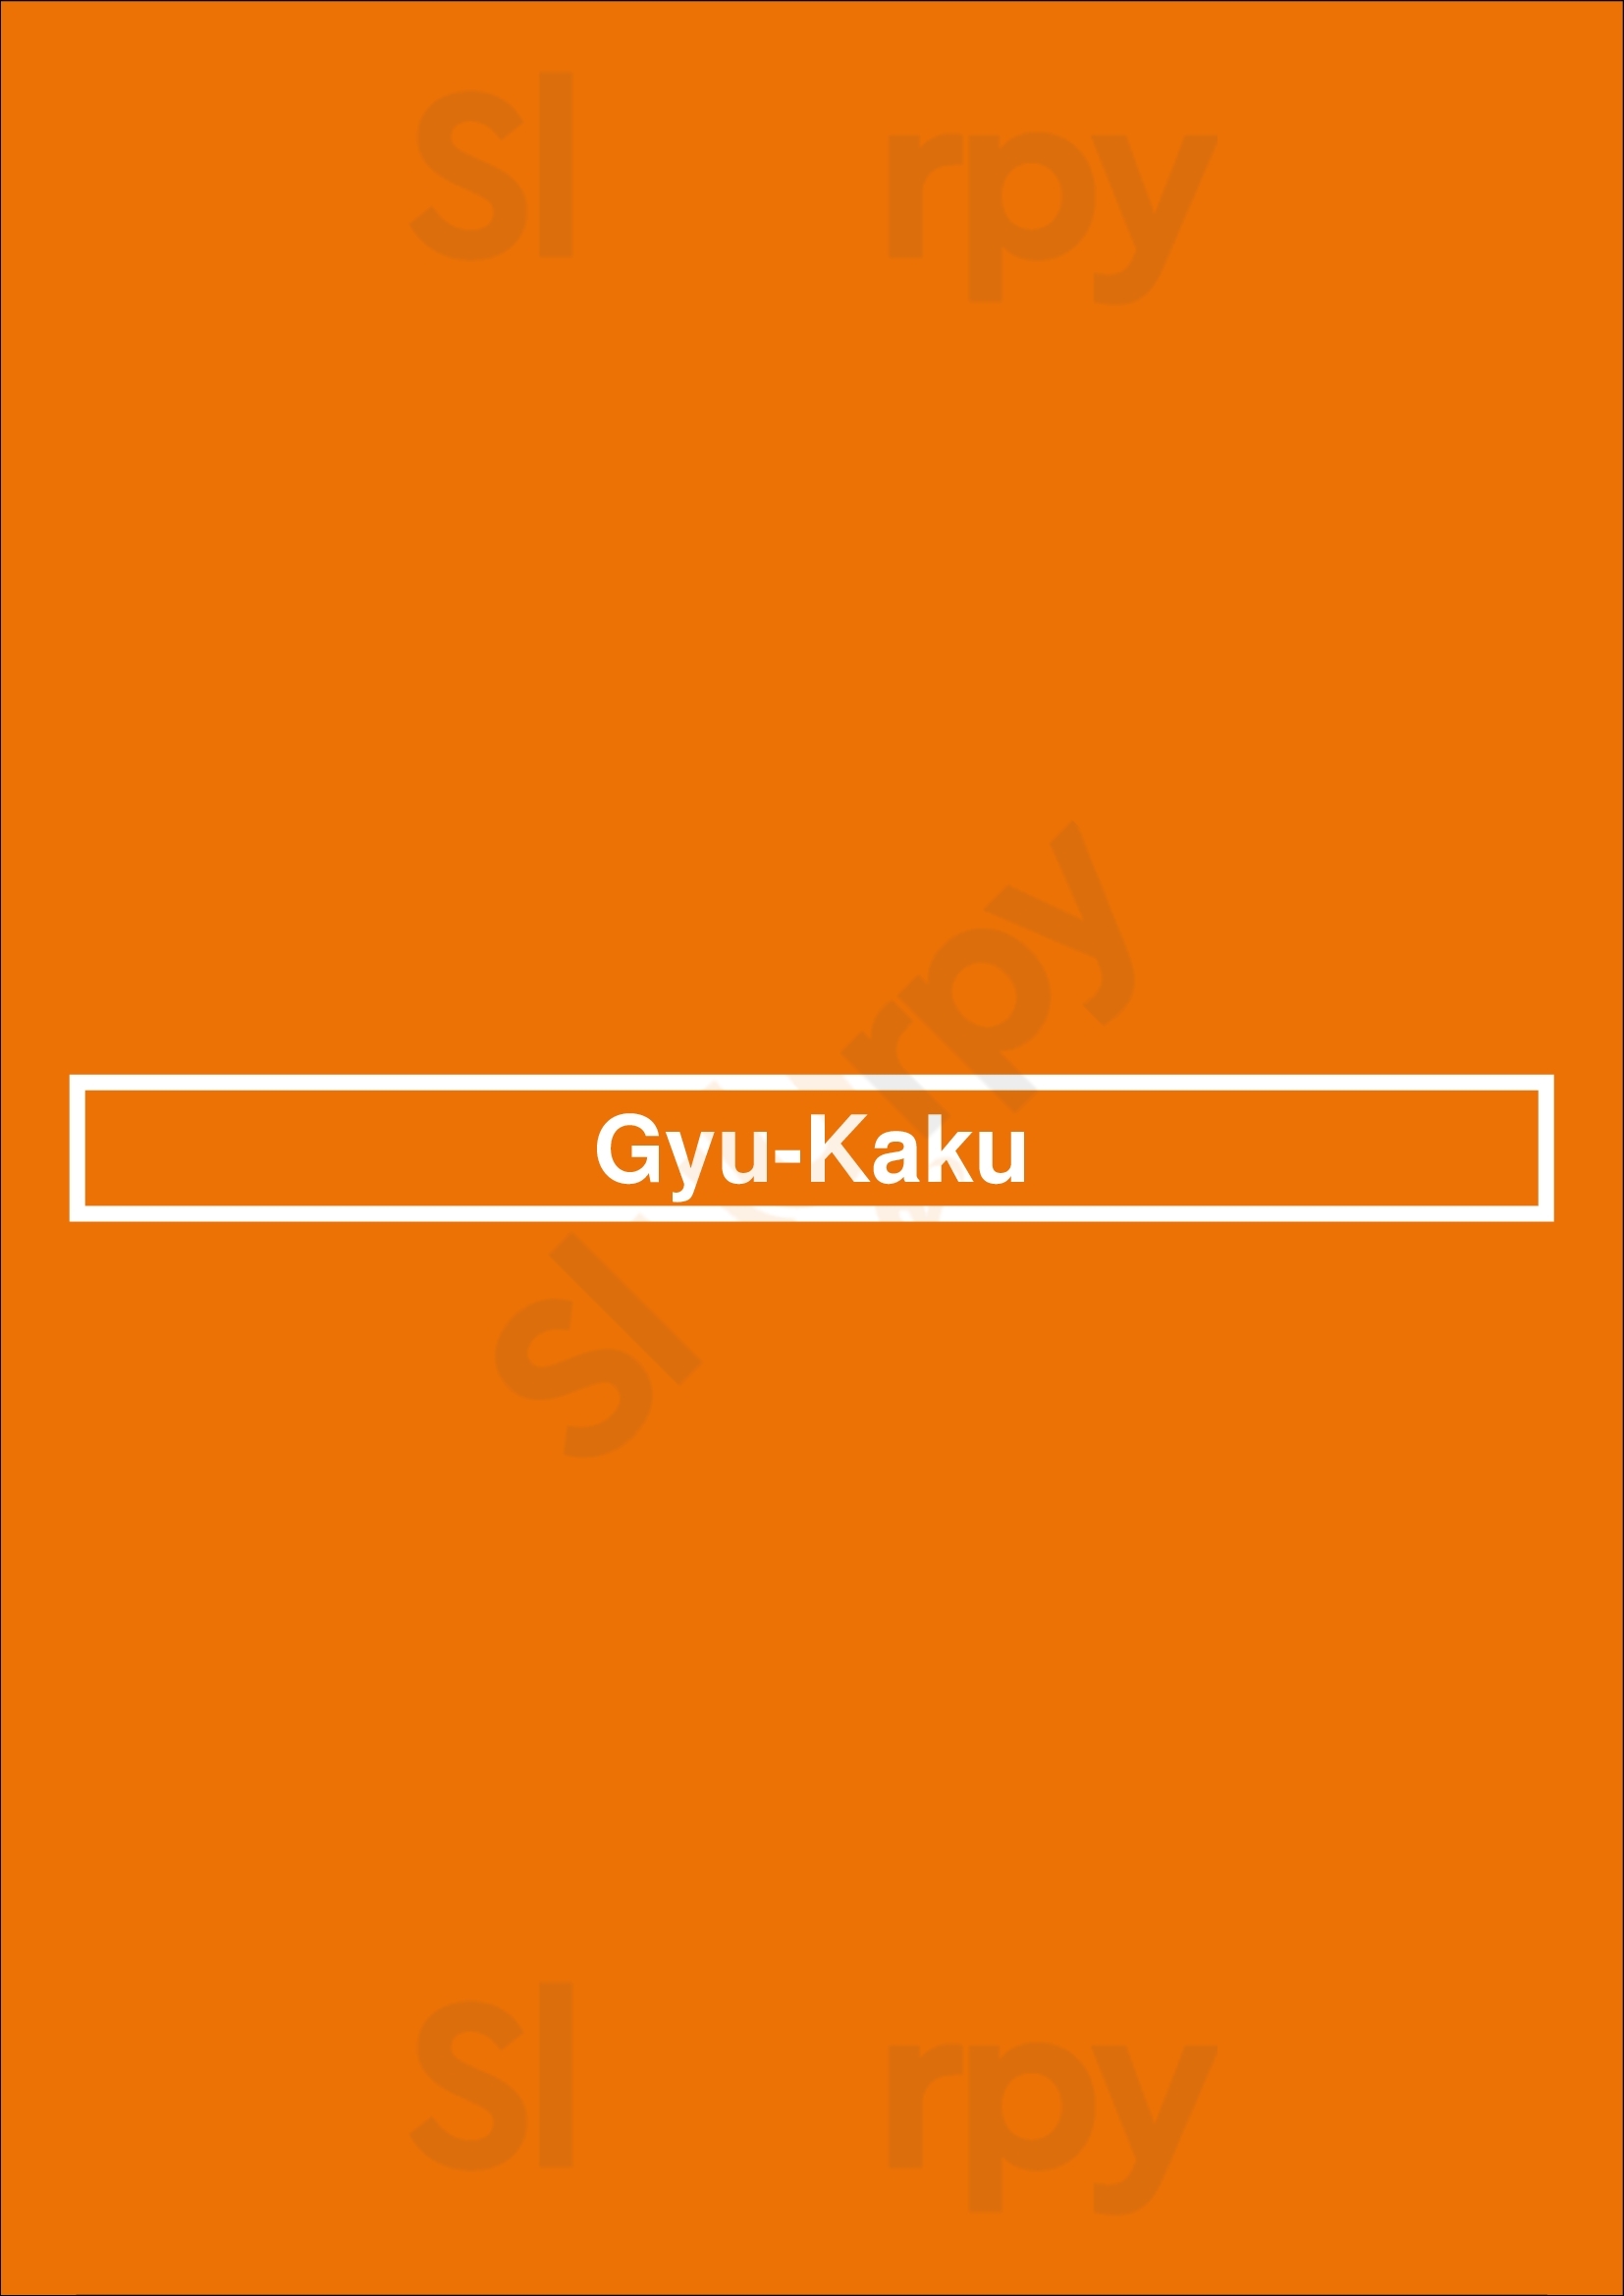 Gyu-kaku Japanese Bbq Edmonton Menu - 1